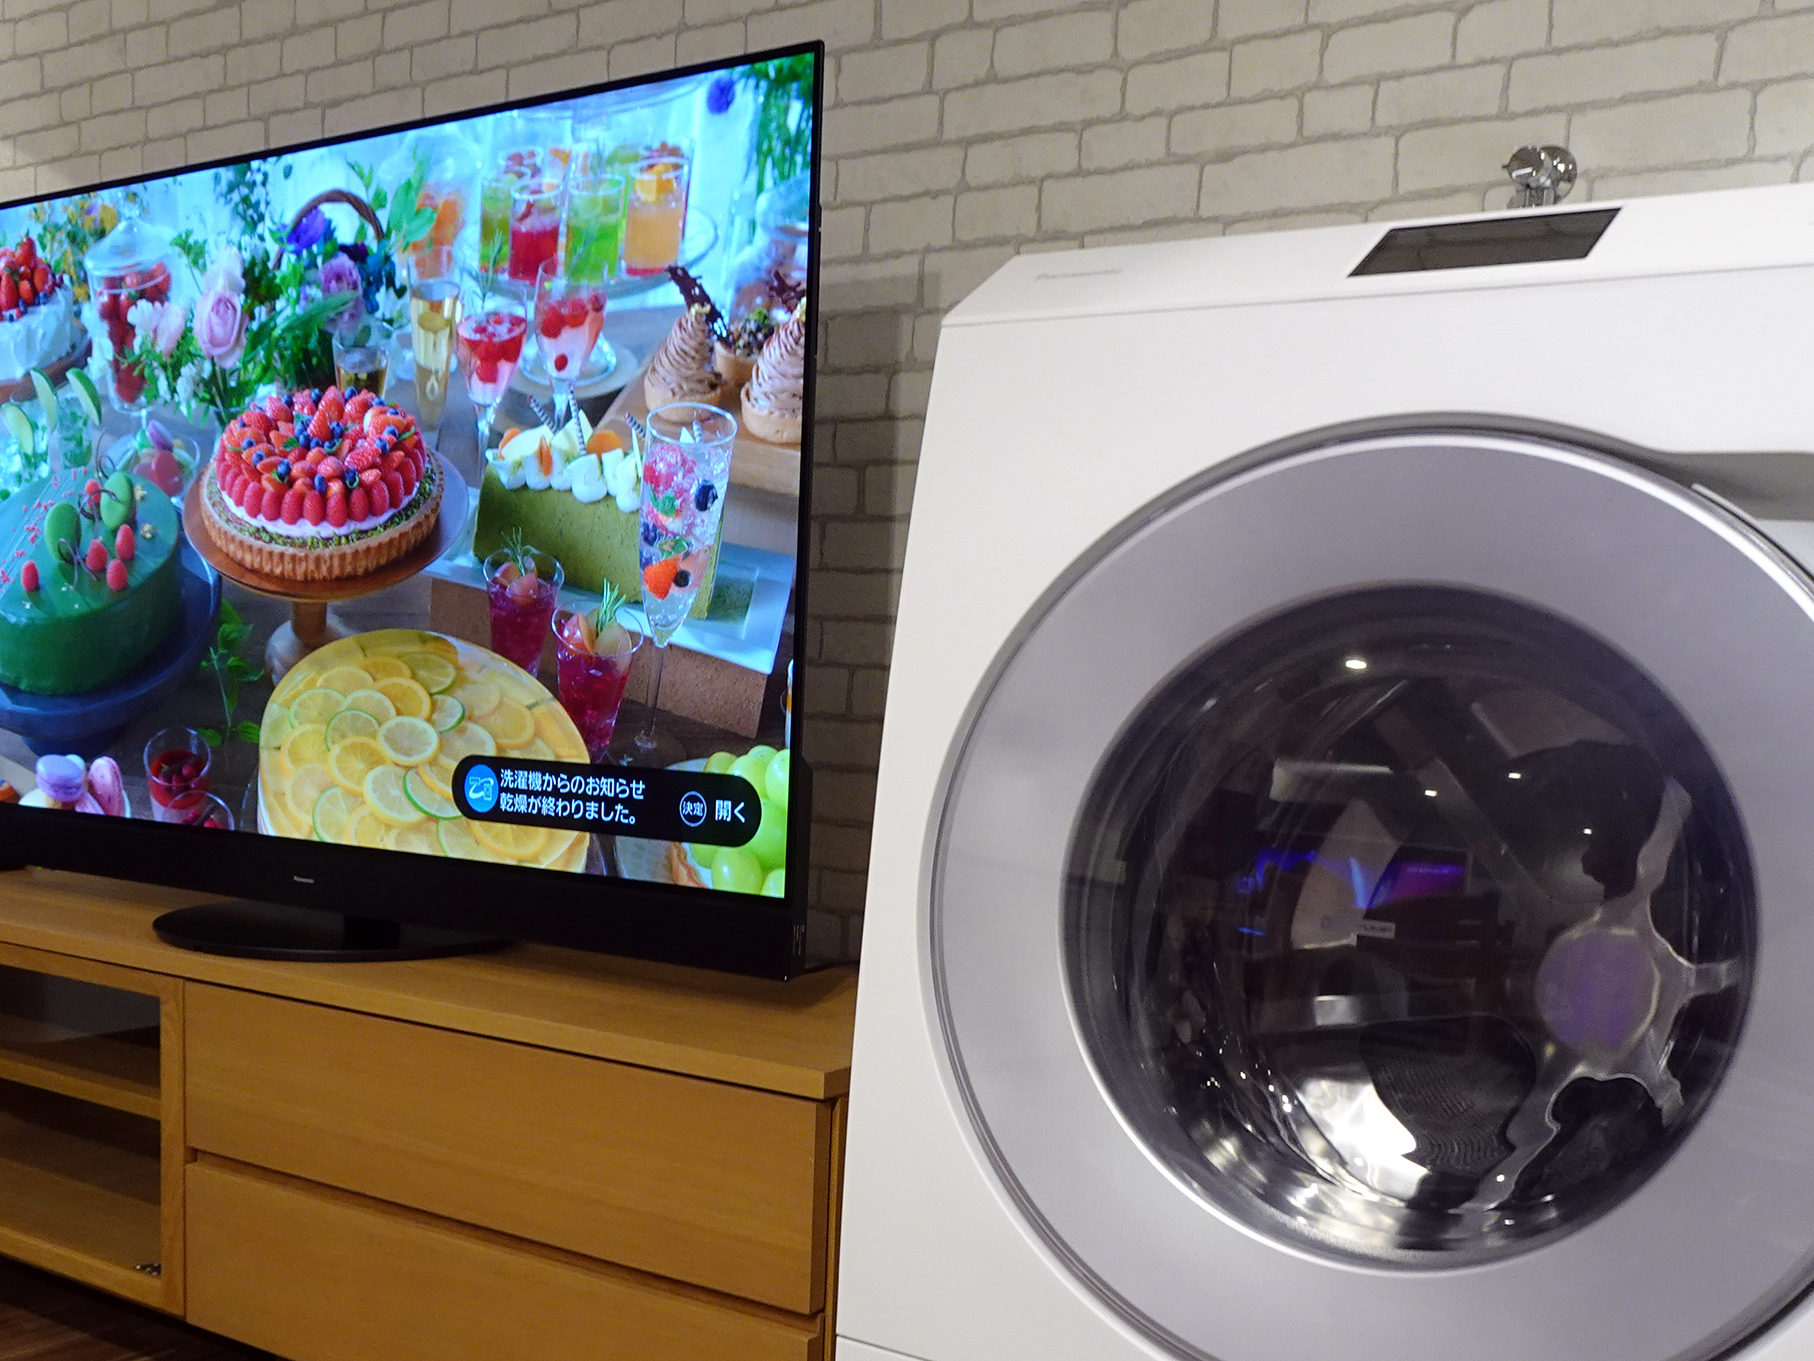 「音声プッシュ通知」の例。洗濯乾燥機の運転が終了するとテレビ側に通知が表示される